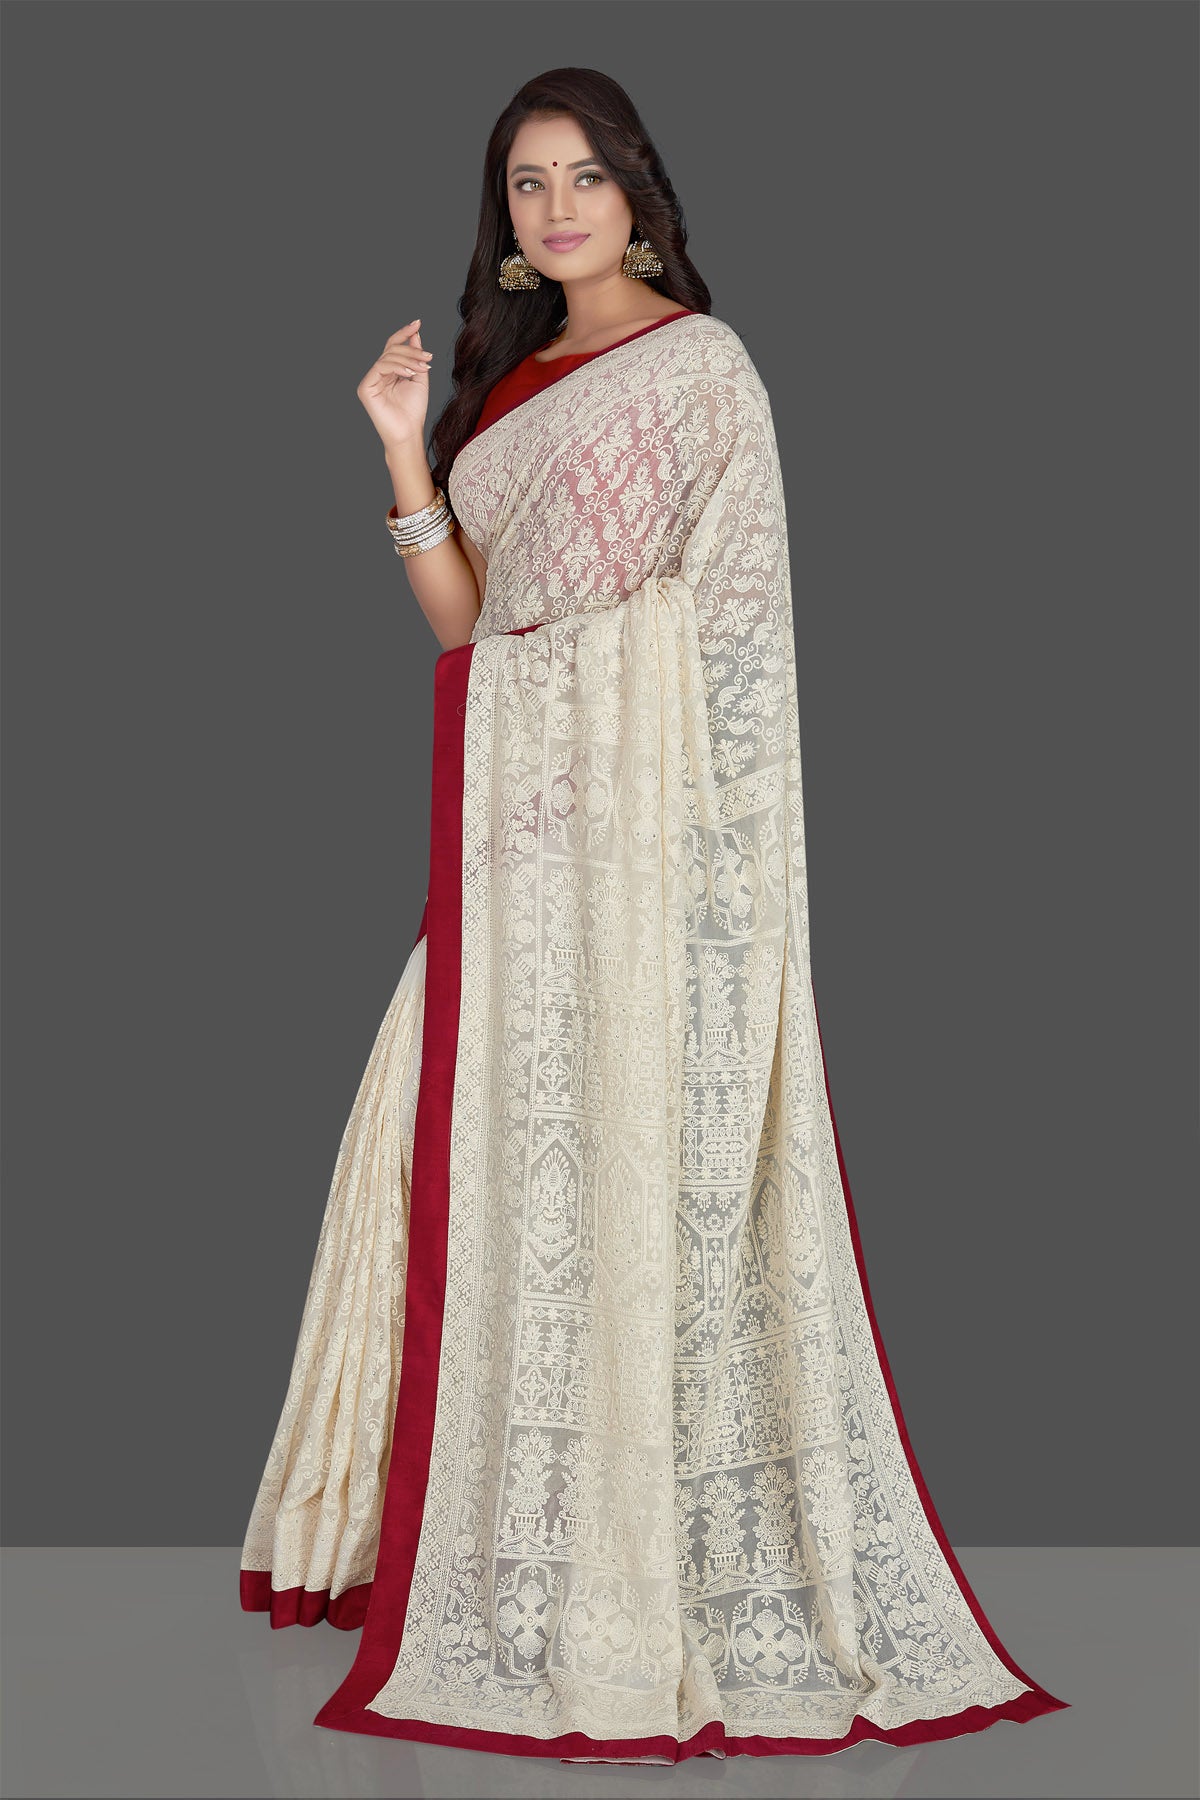 Beautiful sari | Elegant saree, Saree dress, Saree blouse designs